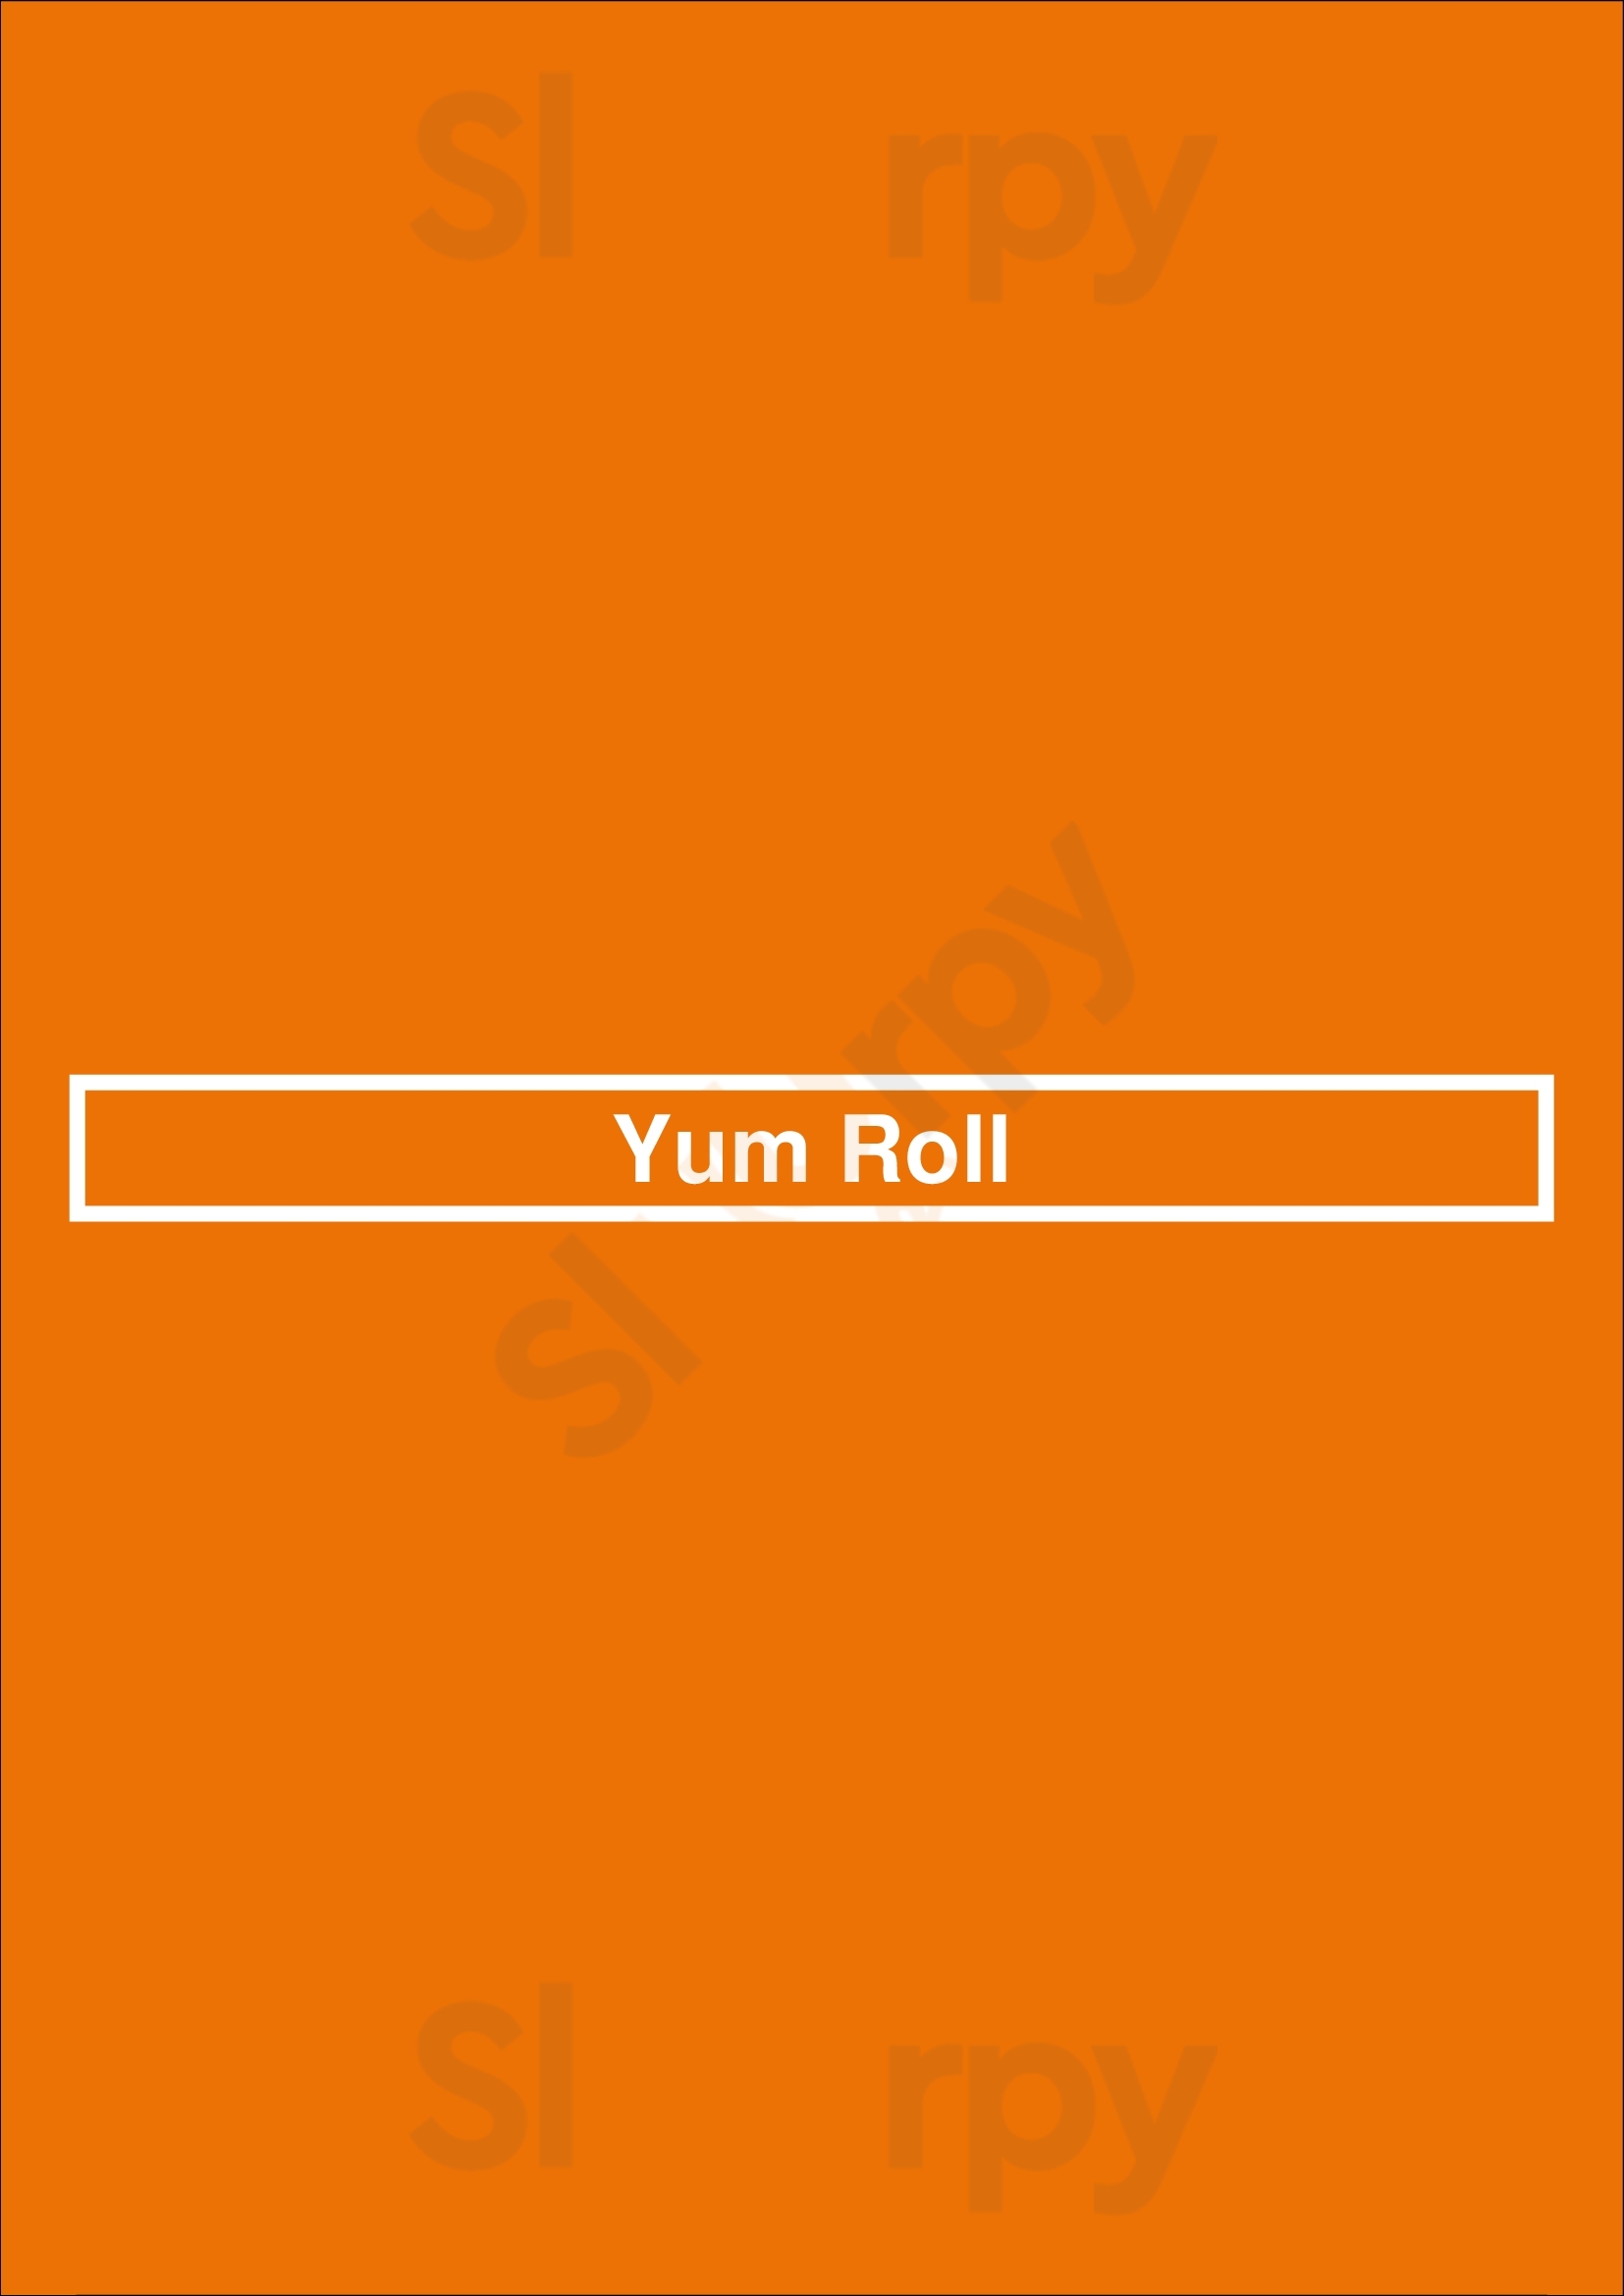 Yum Roll Omaha Menu - 1